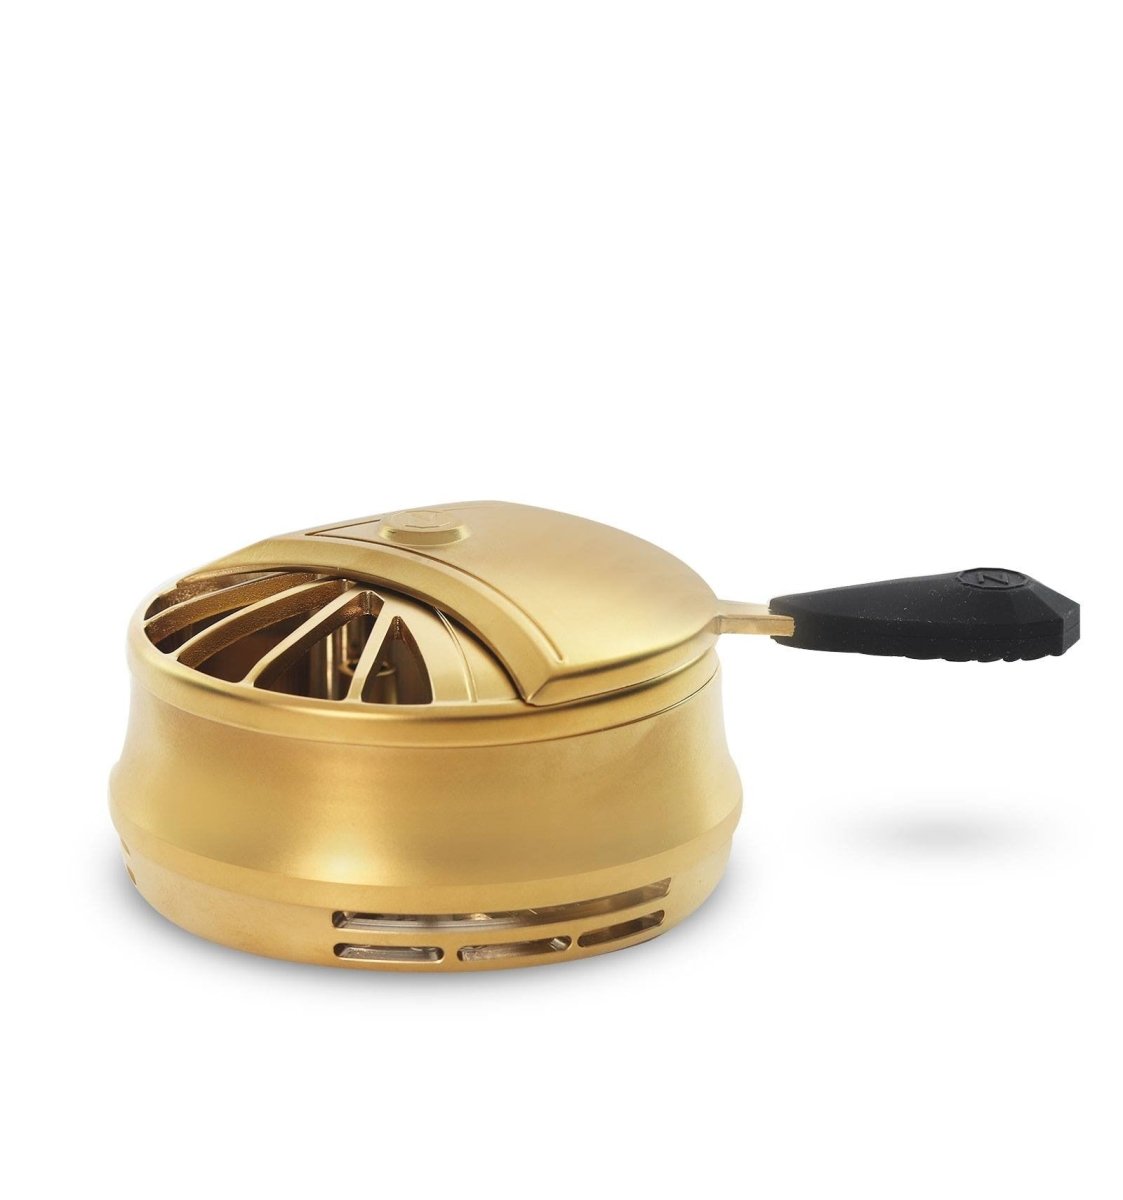 ZEPPELIN Varmeregulator - Guld - Amy Shop - Varmeregulator til vandpibe hoved i guld farve